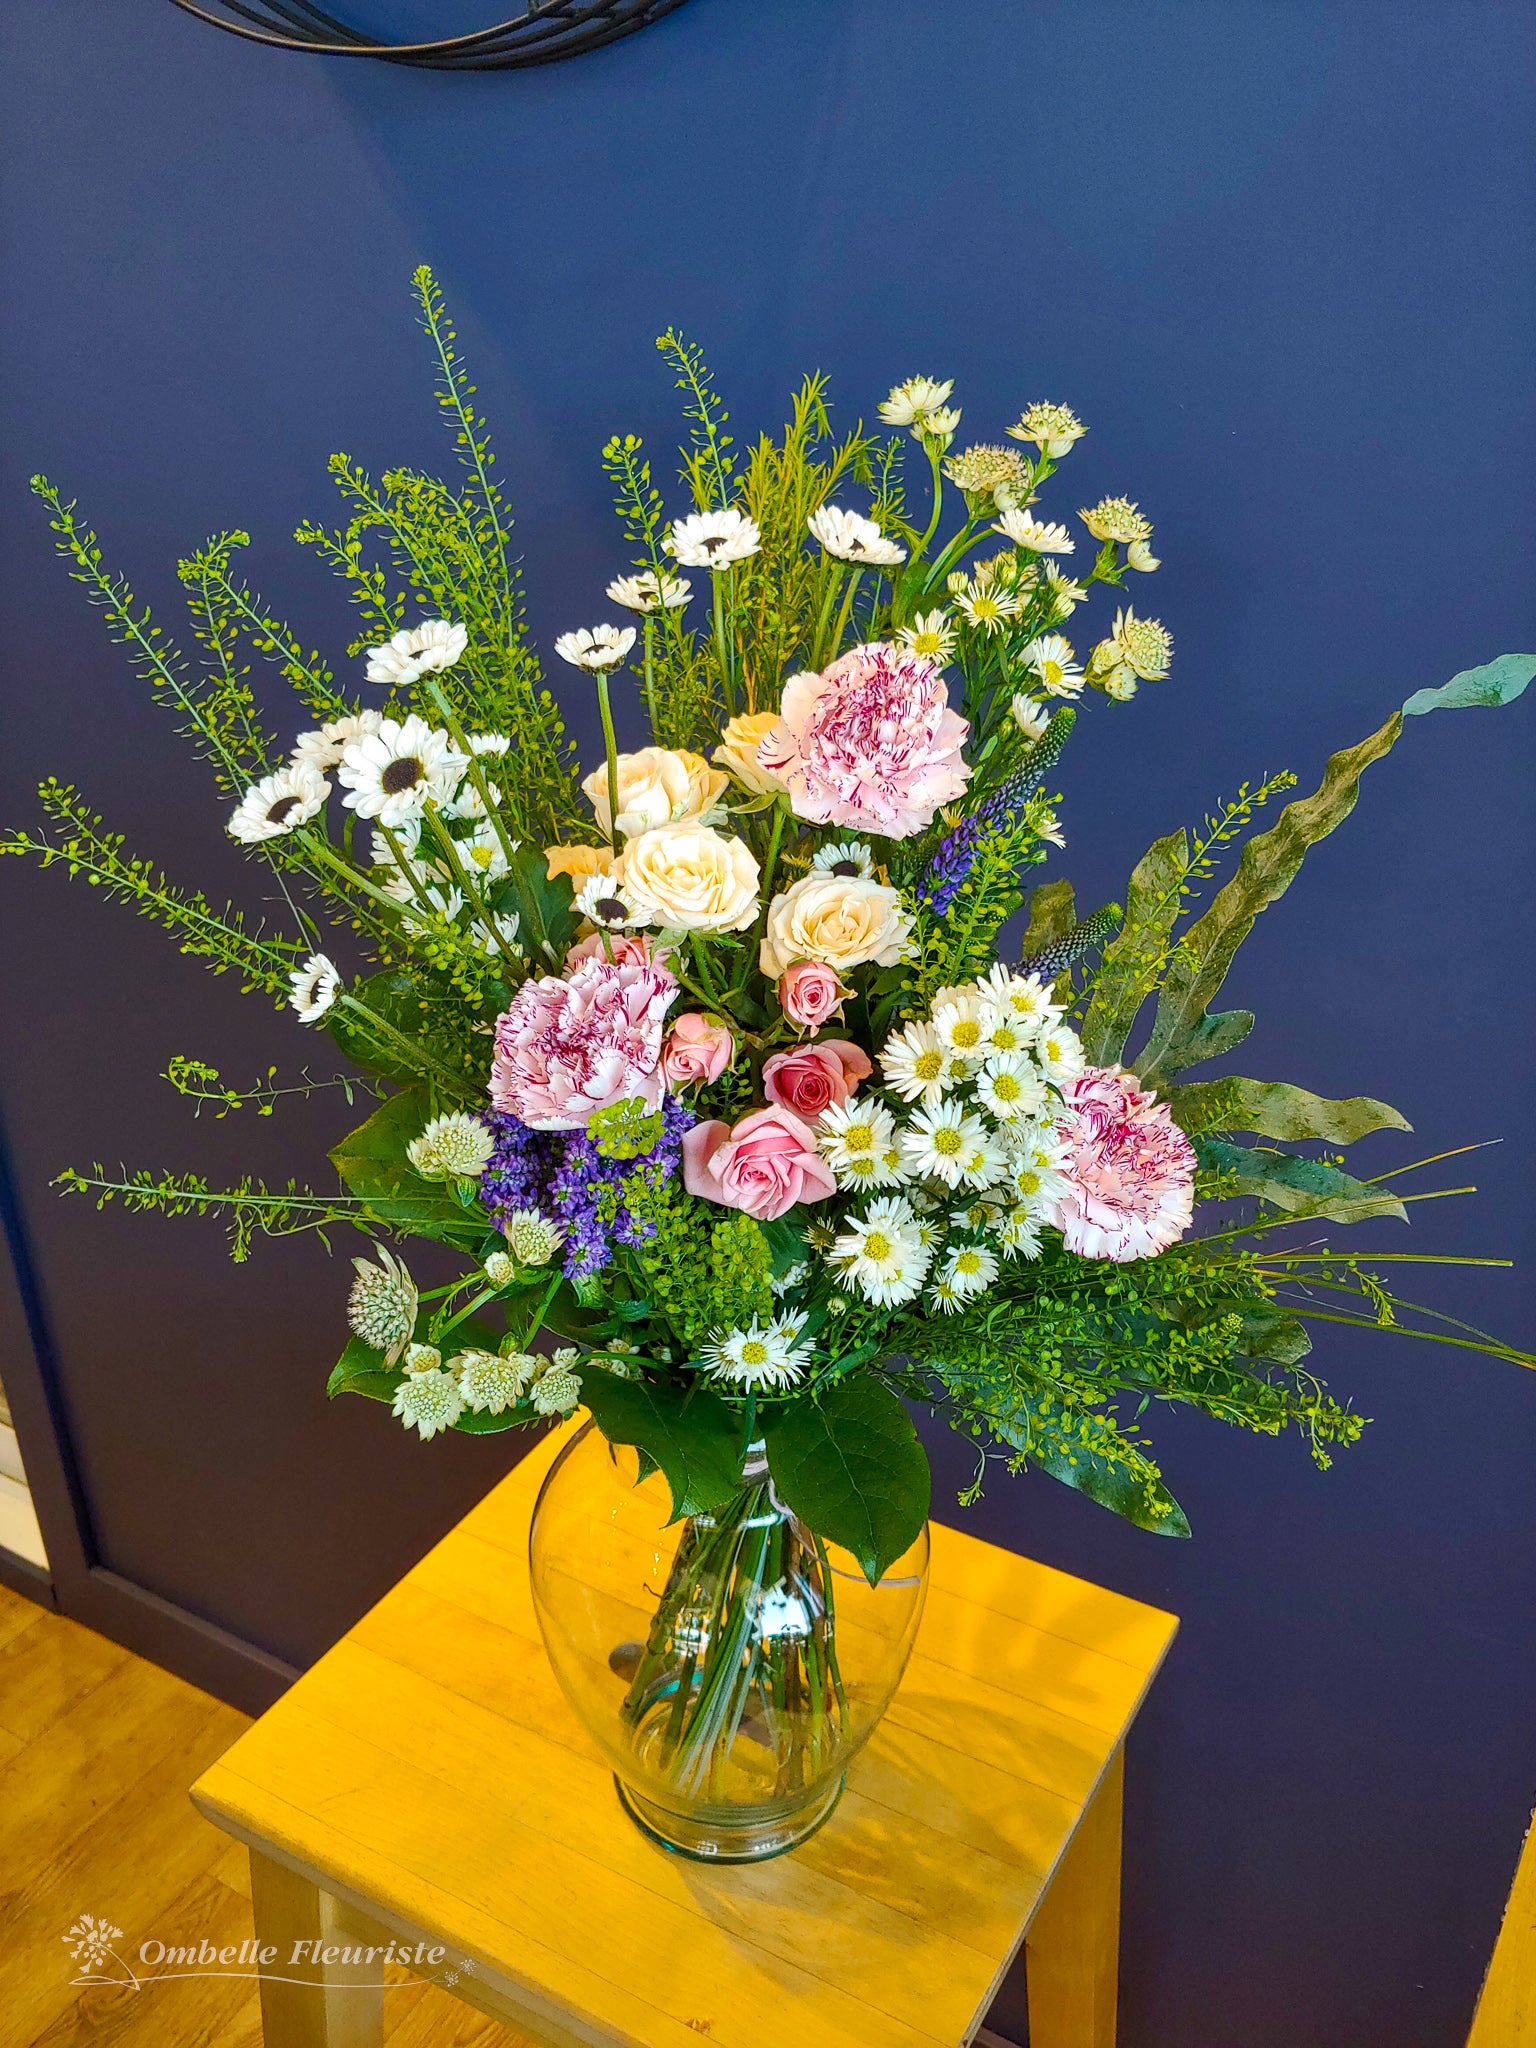 Ombelle Fleuriste - Bouquet de fleurs - Daphnée - BOU-1068